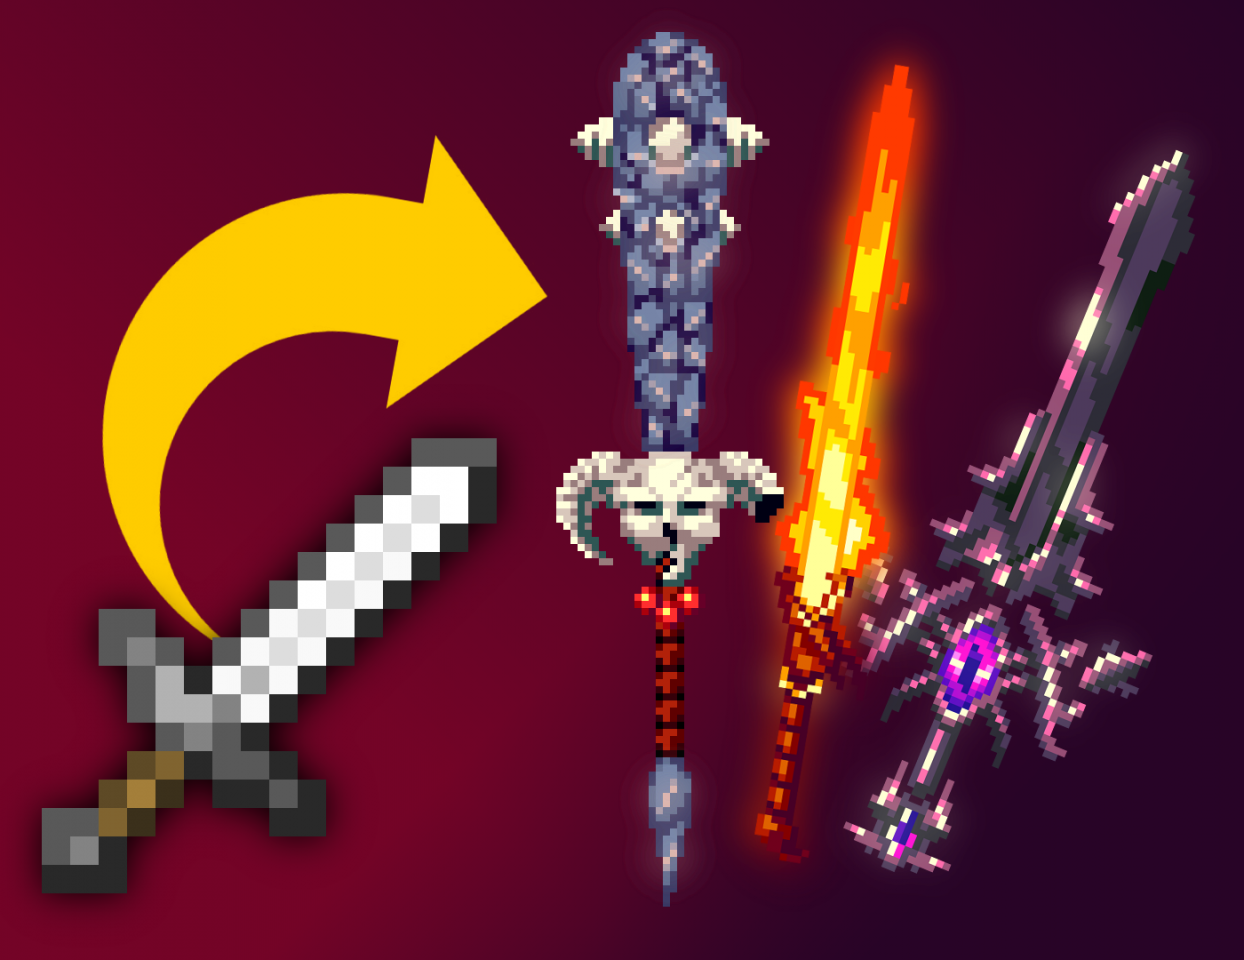 3d fantasy weapons - текстуры красивых объемных мечей [1.14.4] [1.13.2] »  Скачать Текстуры для майнкрафт, текстур паки